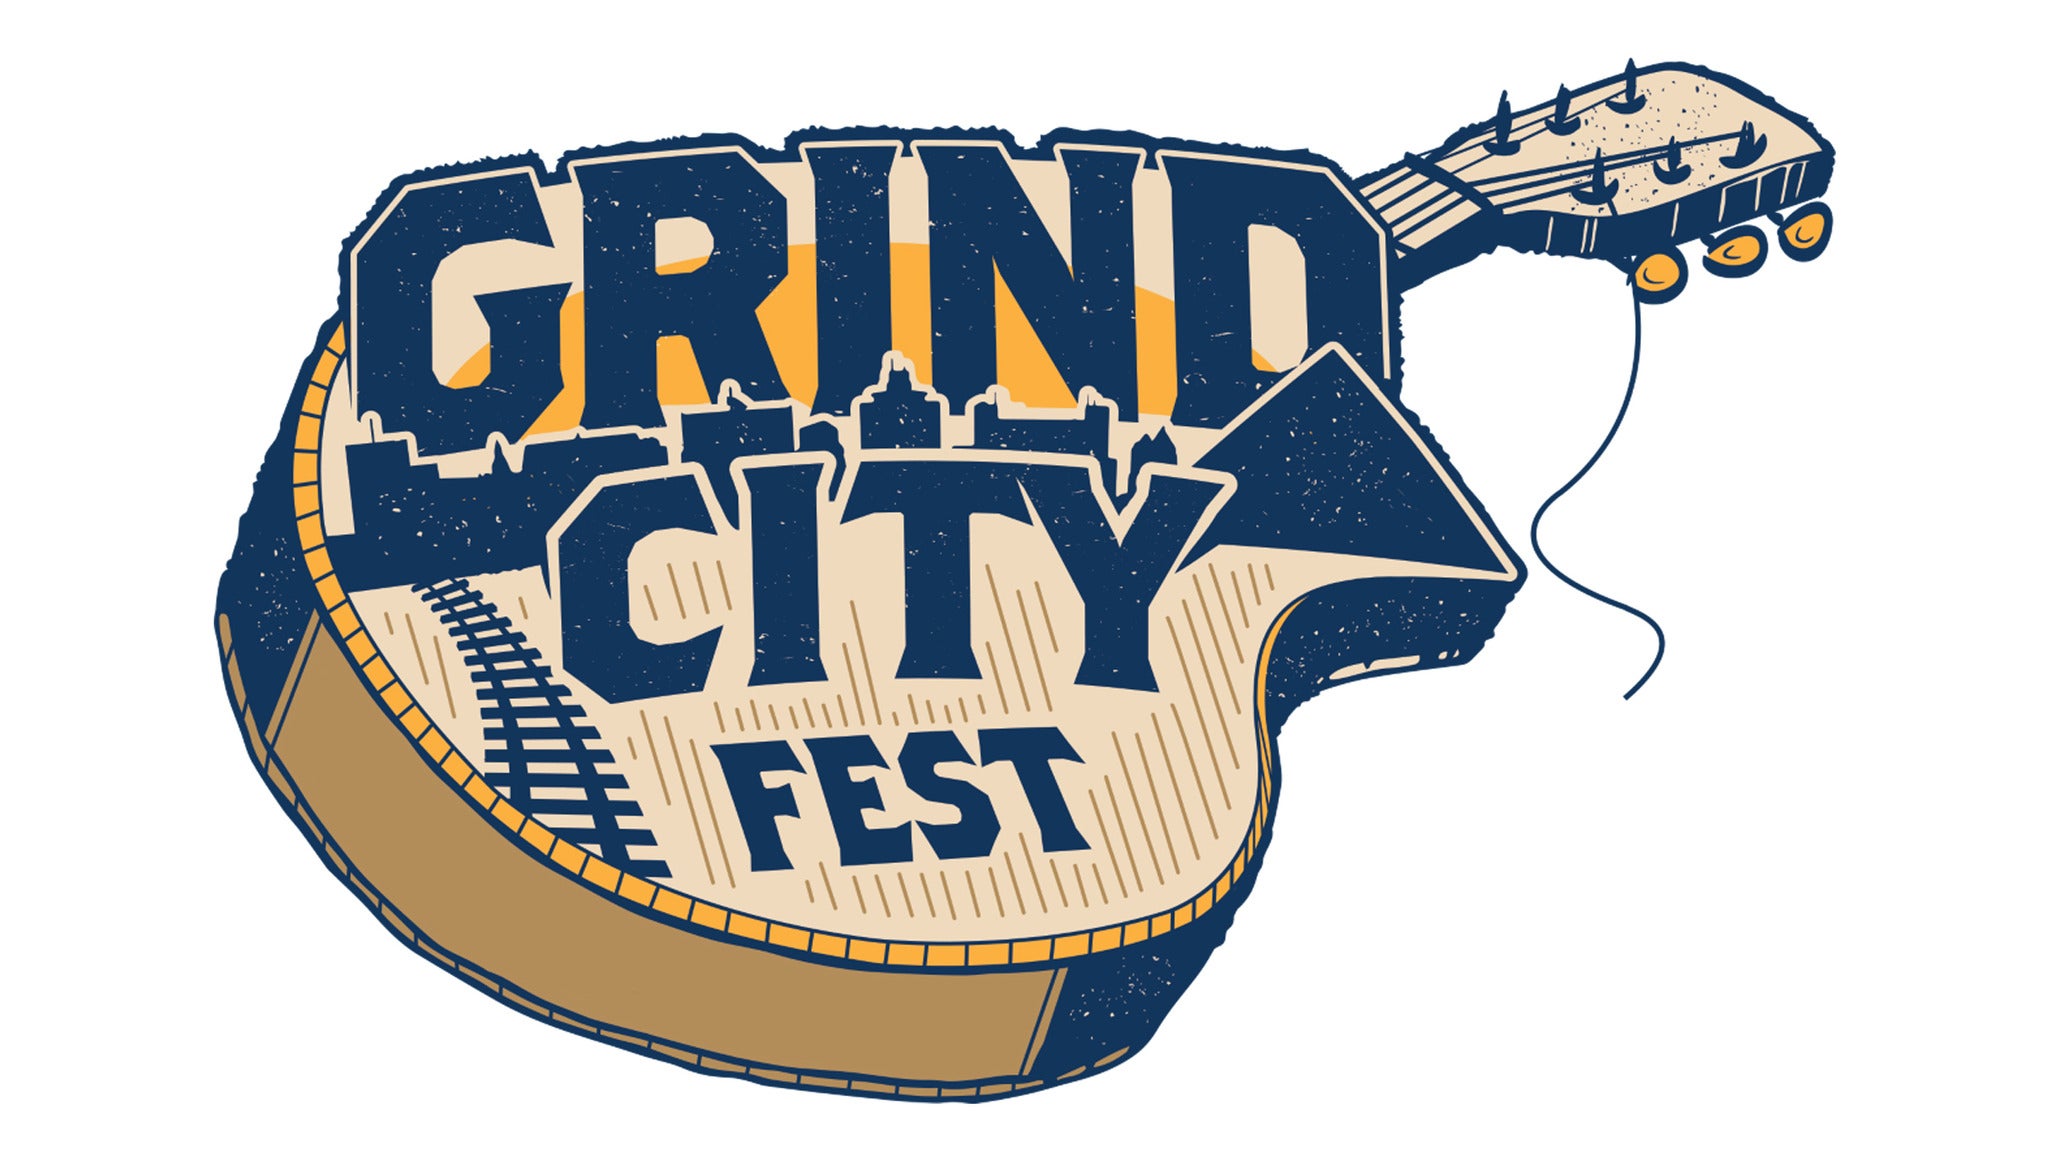 Grind City Fest presale information on freepresalepasswords.com